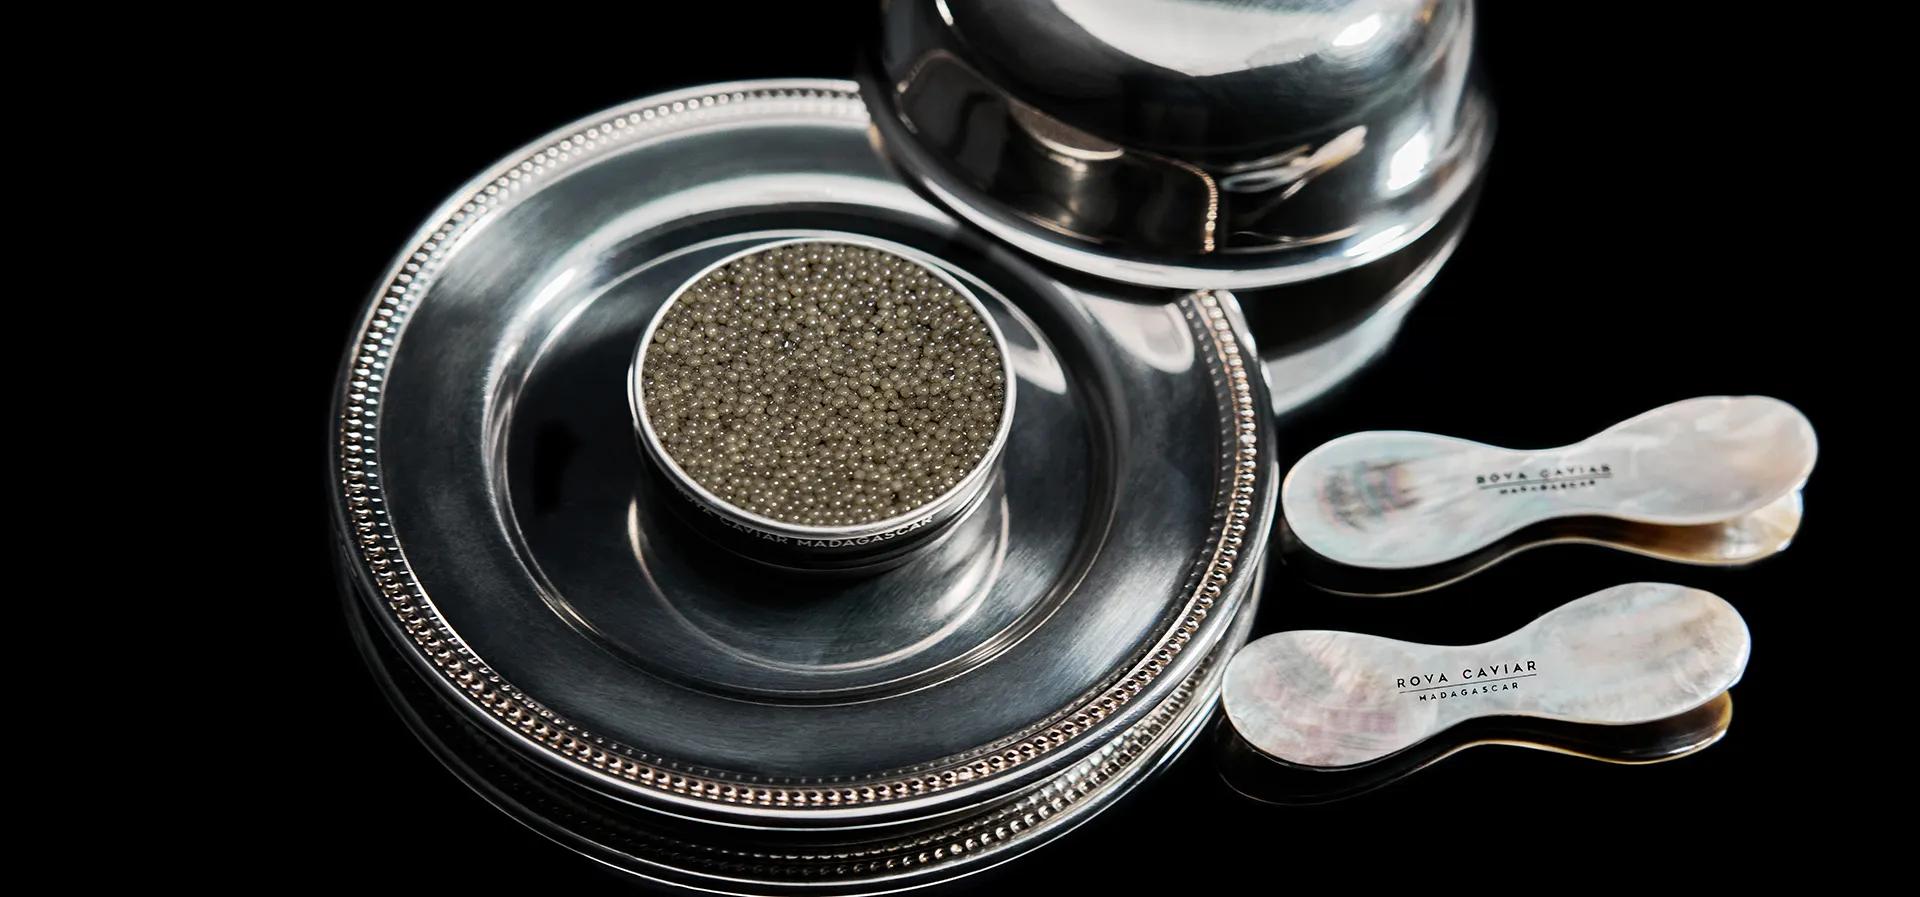 Service en argenterie et boîte de caviar Shipova Royal